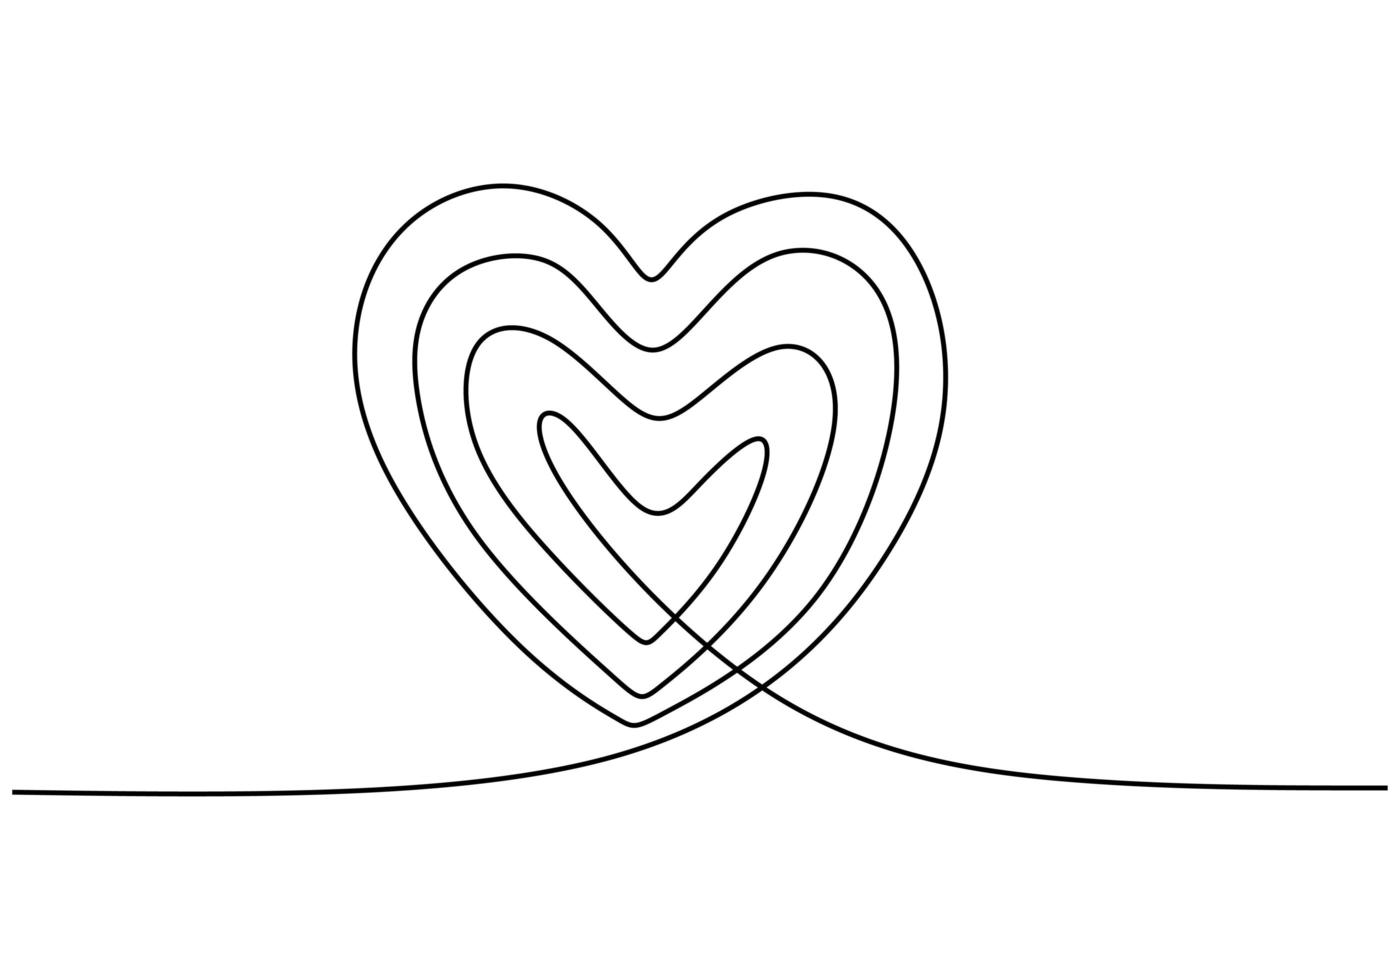 kontinuierliche Strichzeichnung des Liebesherzzeichens. ein Hand gezeichneter Minimalismus, Vektorillustration. Romantik und Hochzeitssymbol vektor